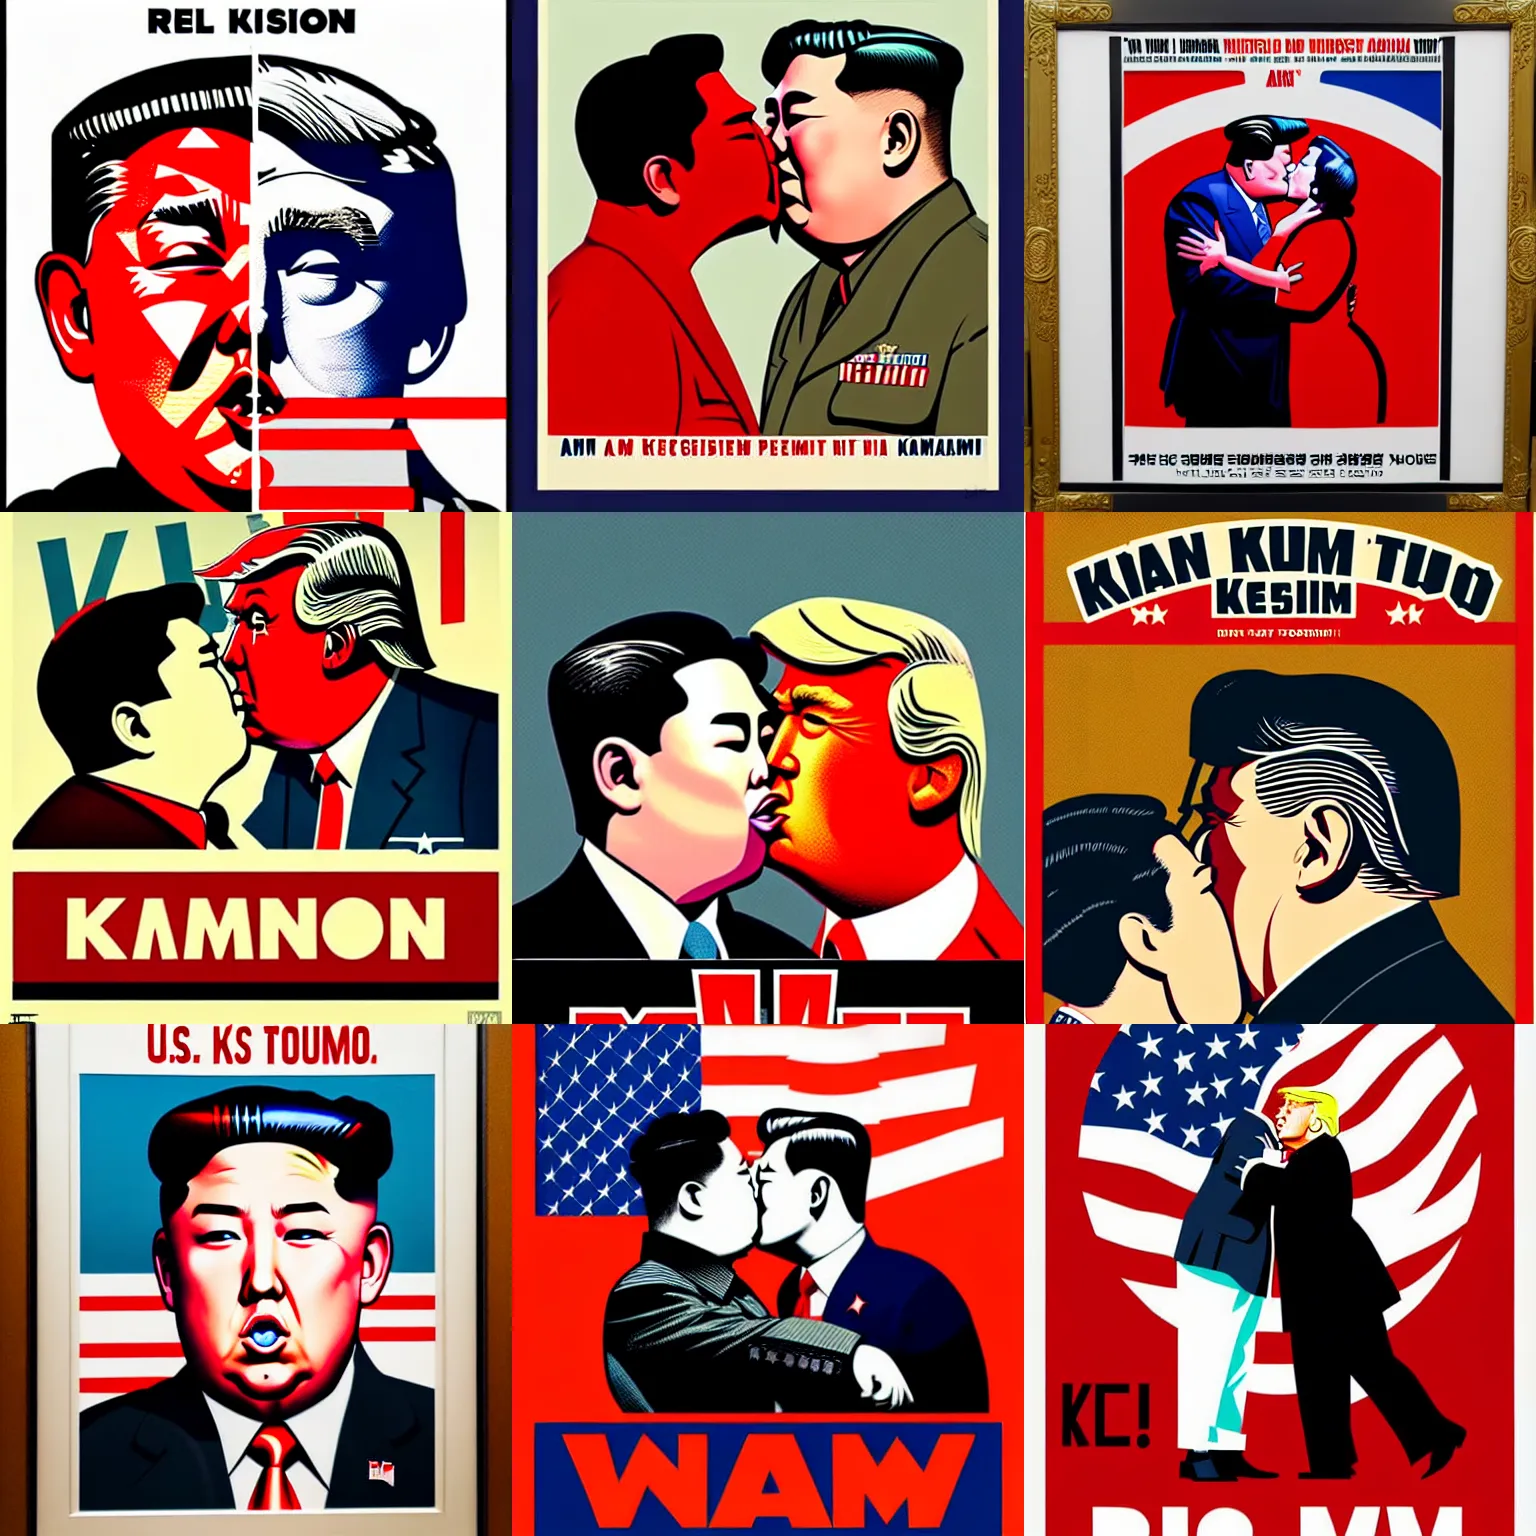 Prompt: a wwii us propaganda portrait of kim jong - un kissing donald trump by rei kamoi and dan mumford, - text